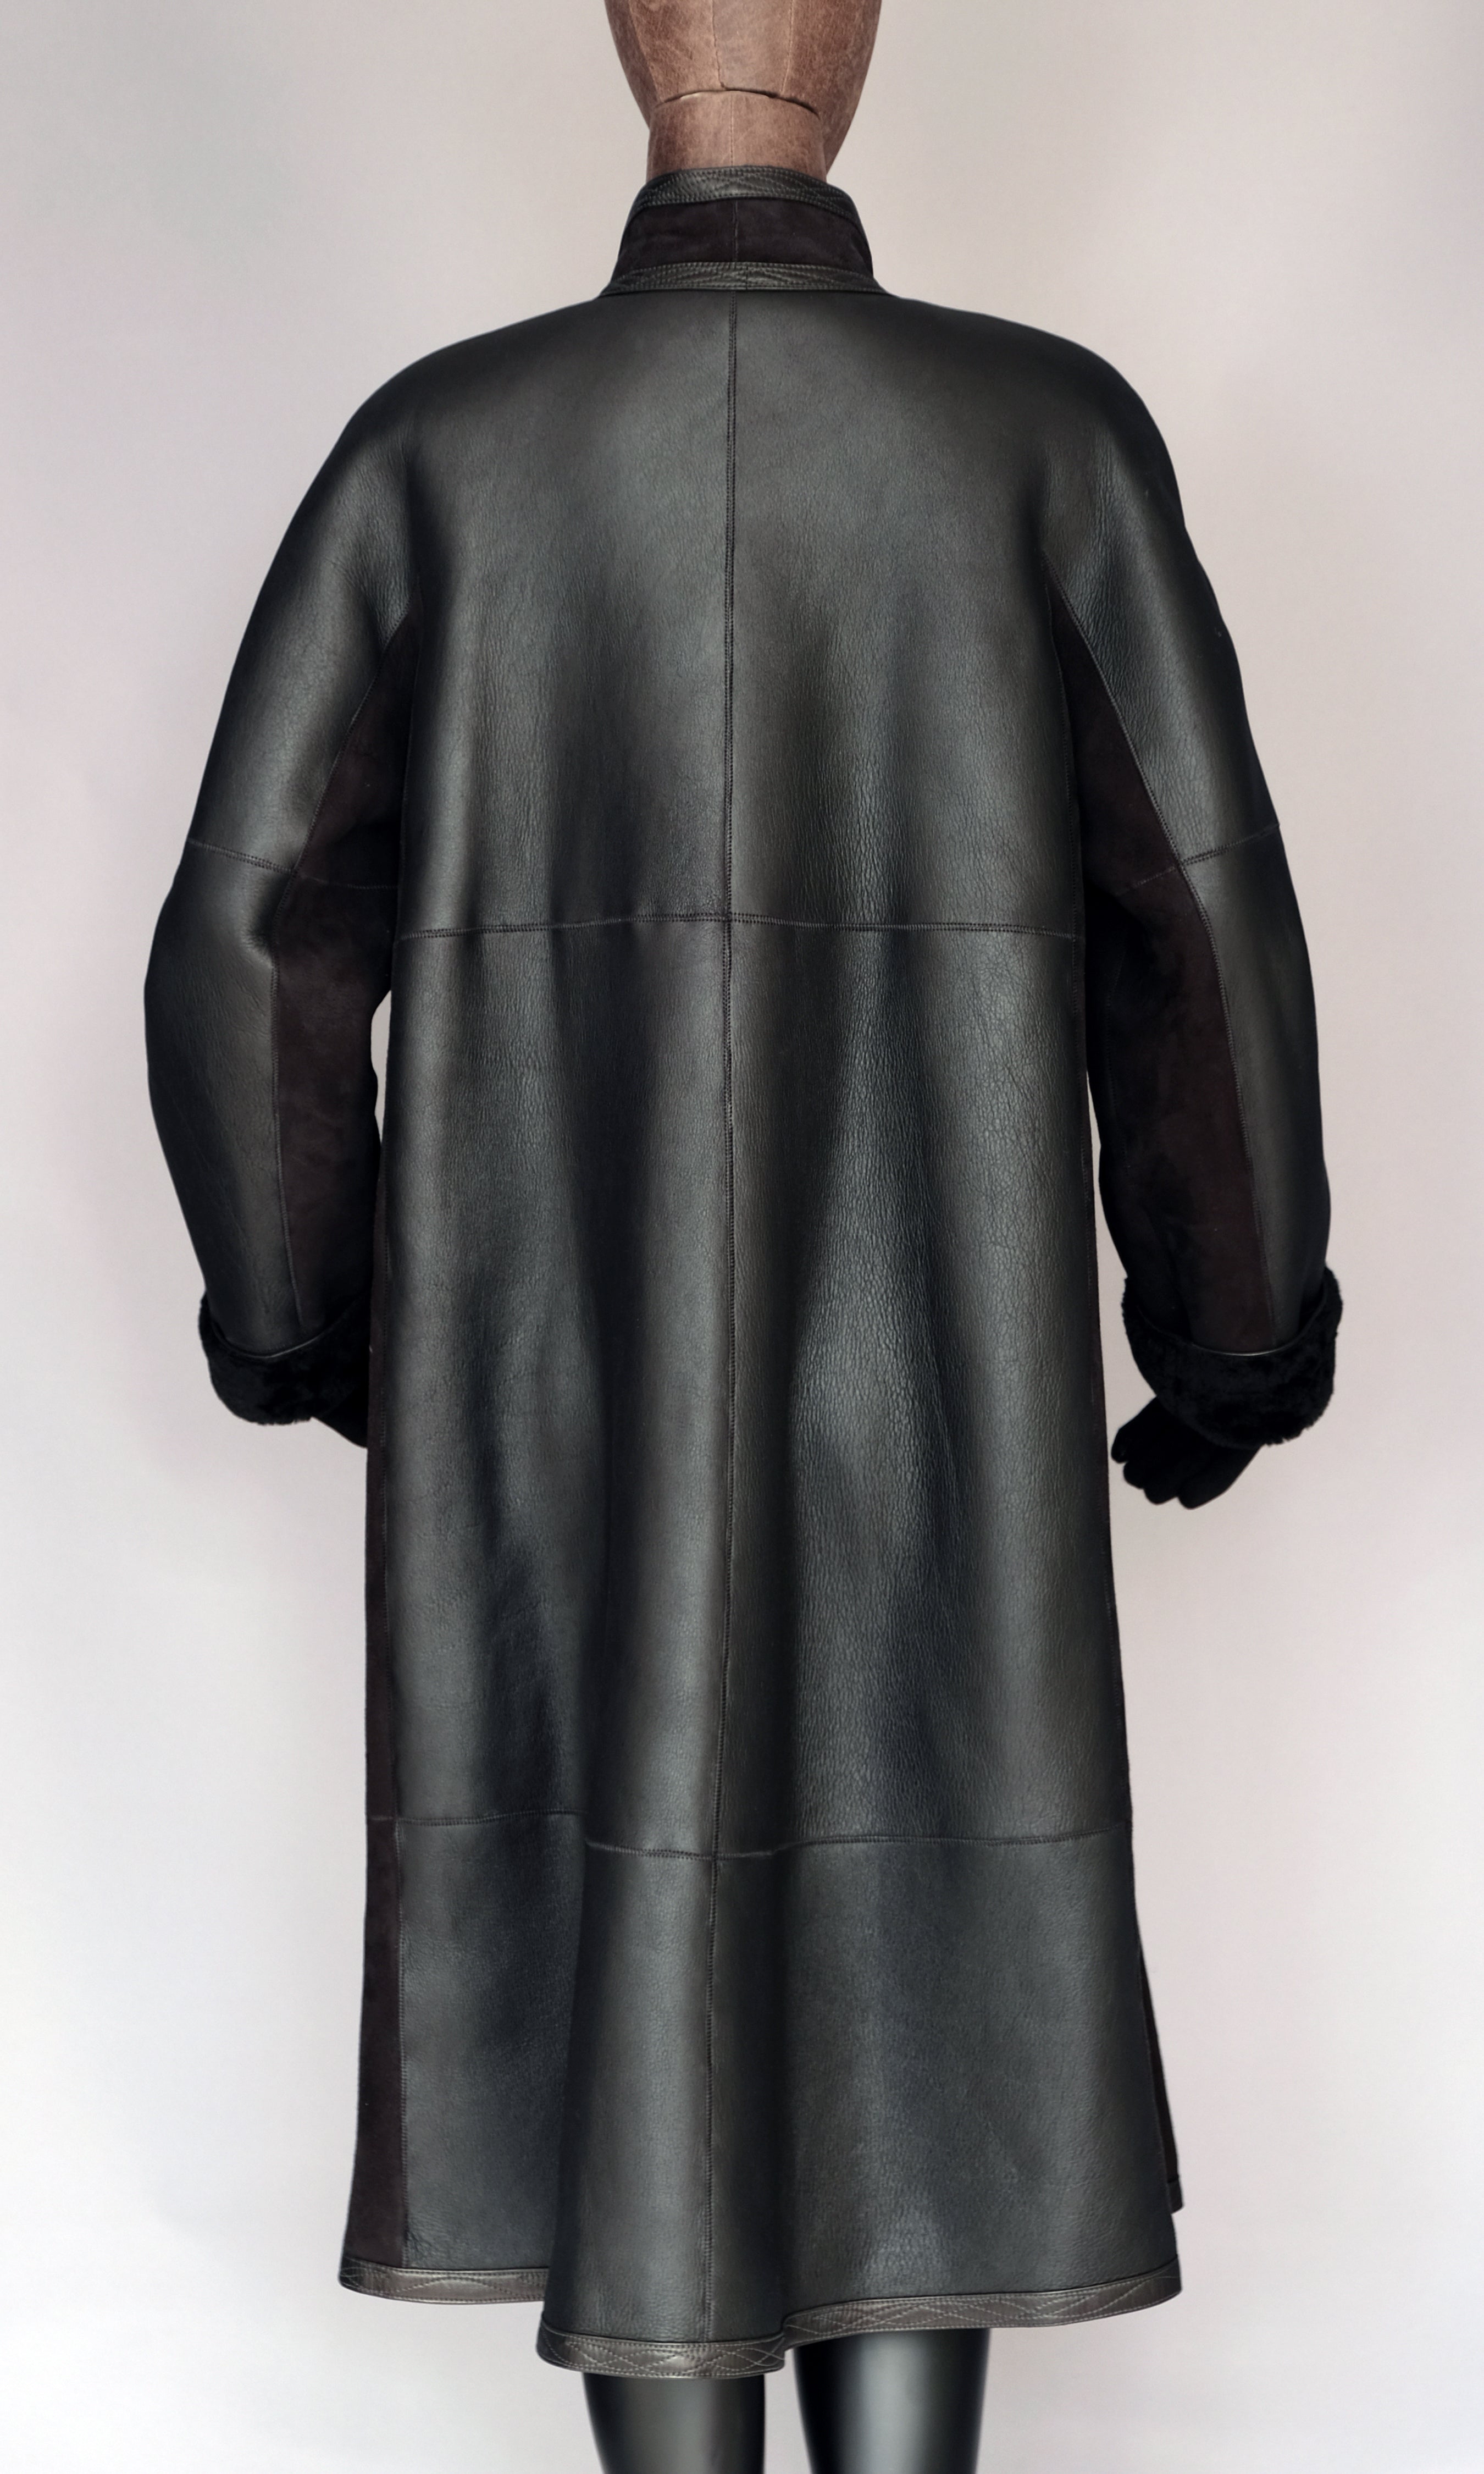 Long Black Shearling Coat size medium (10)